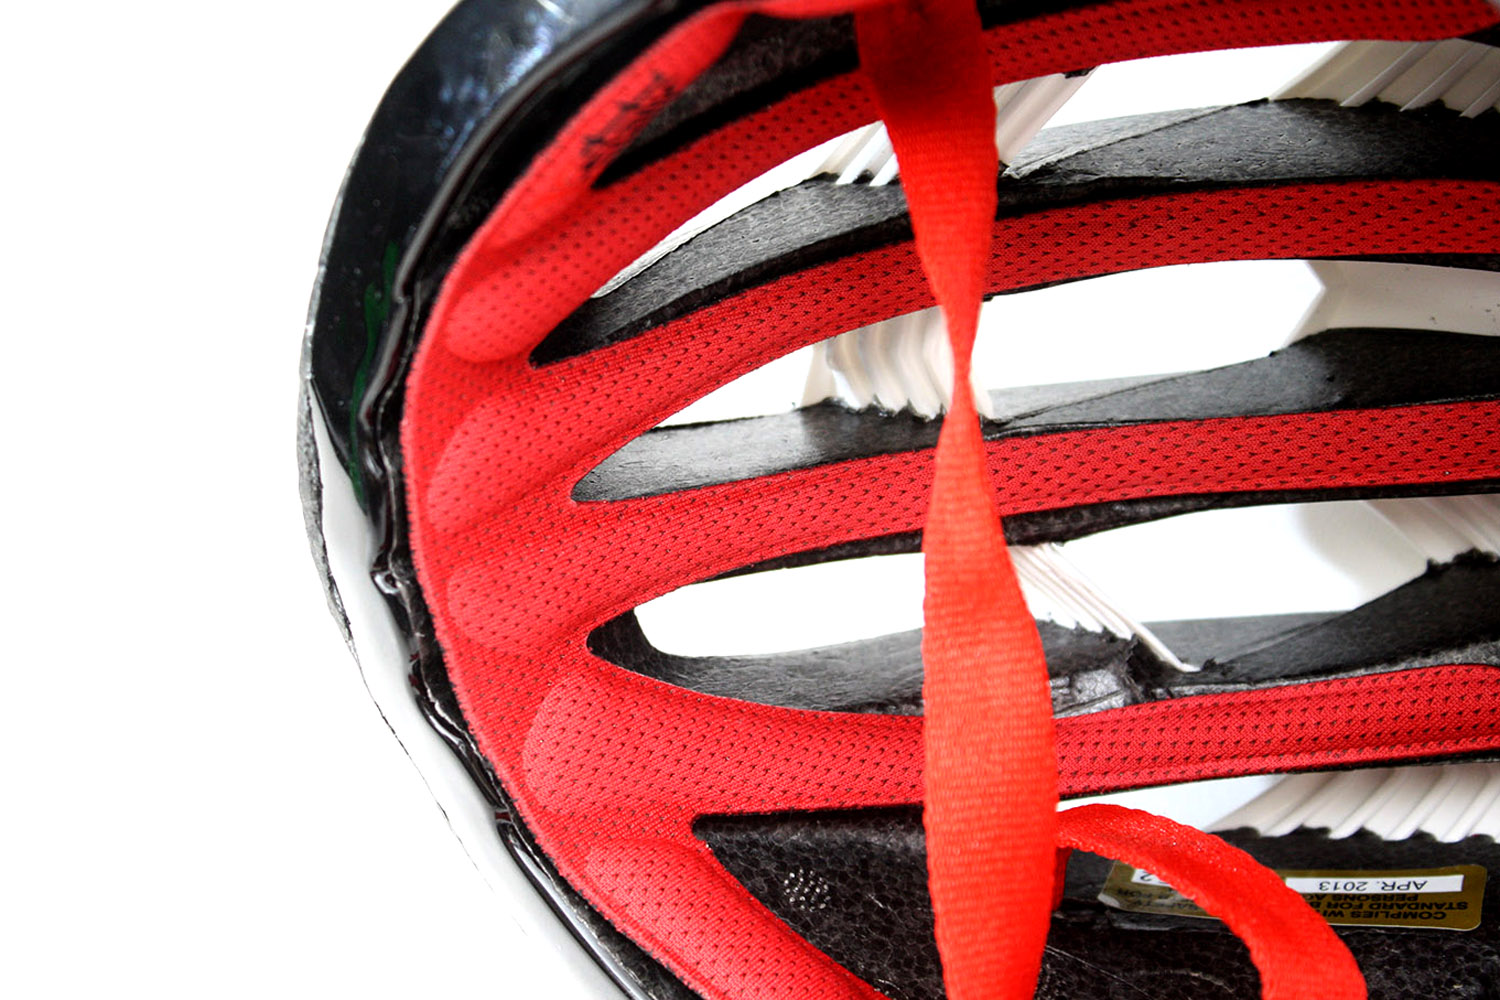 Review: Louis Garneau Course helmet | road.cc